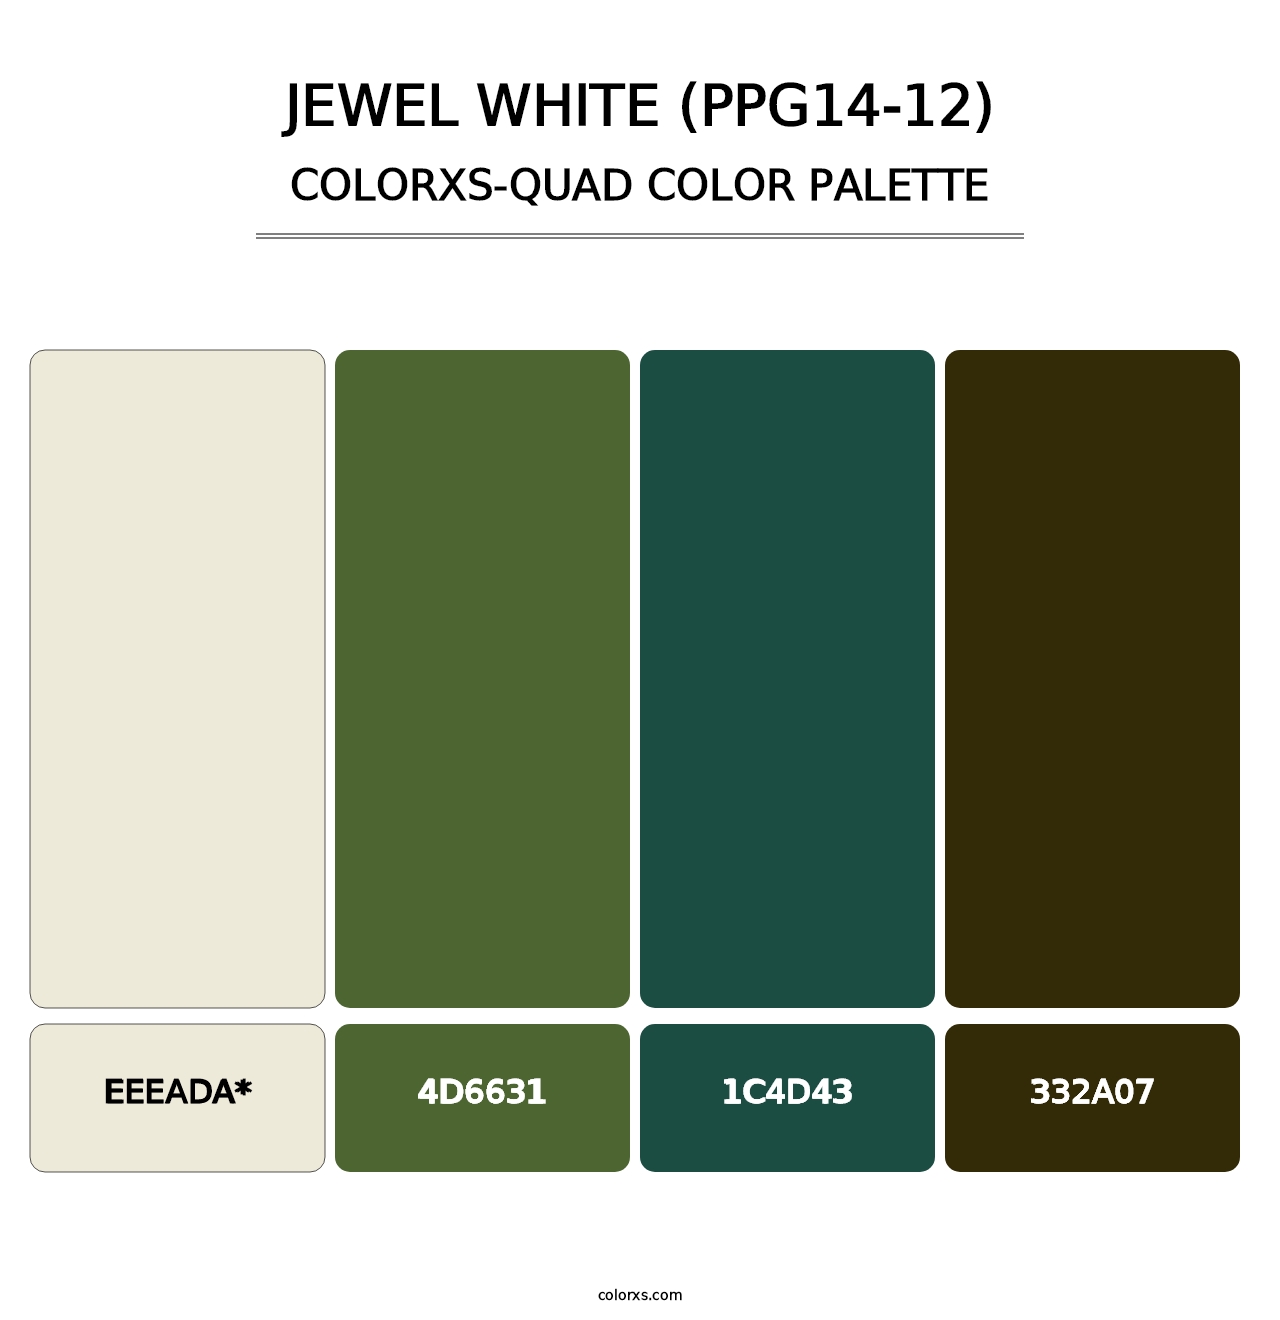 Jewel White (PPG14-12) - Colorxs Quad Palette